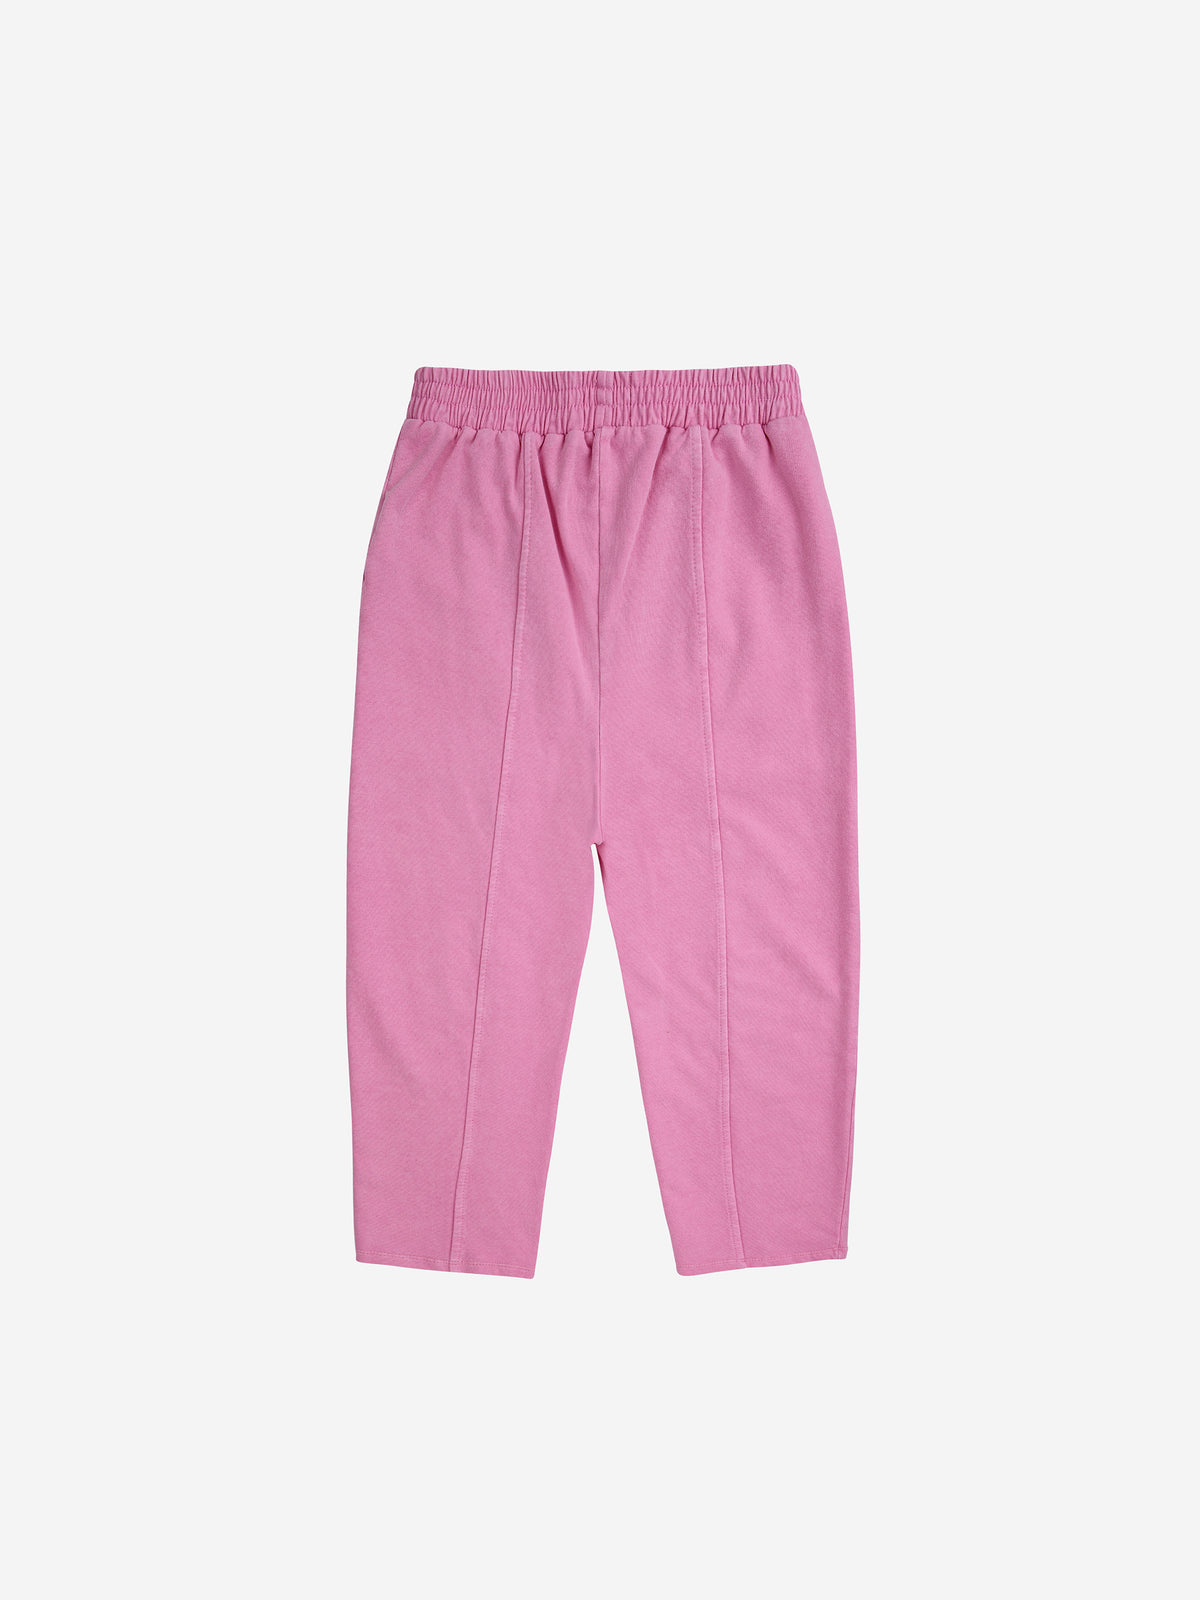 Bc pink jogging pants, Bobo Choses